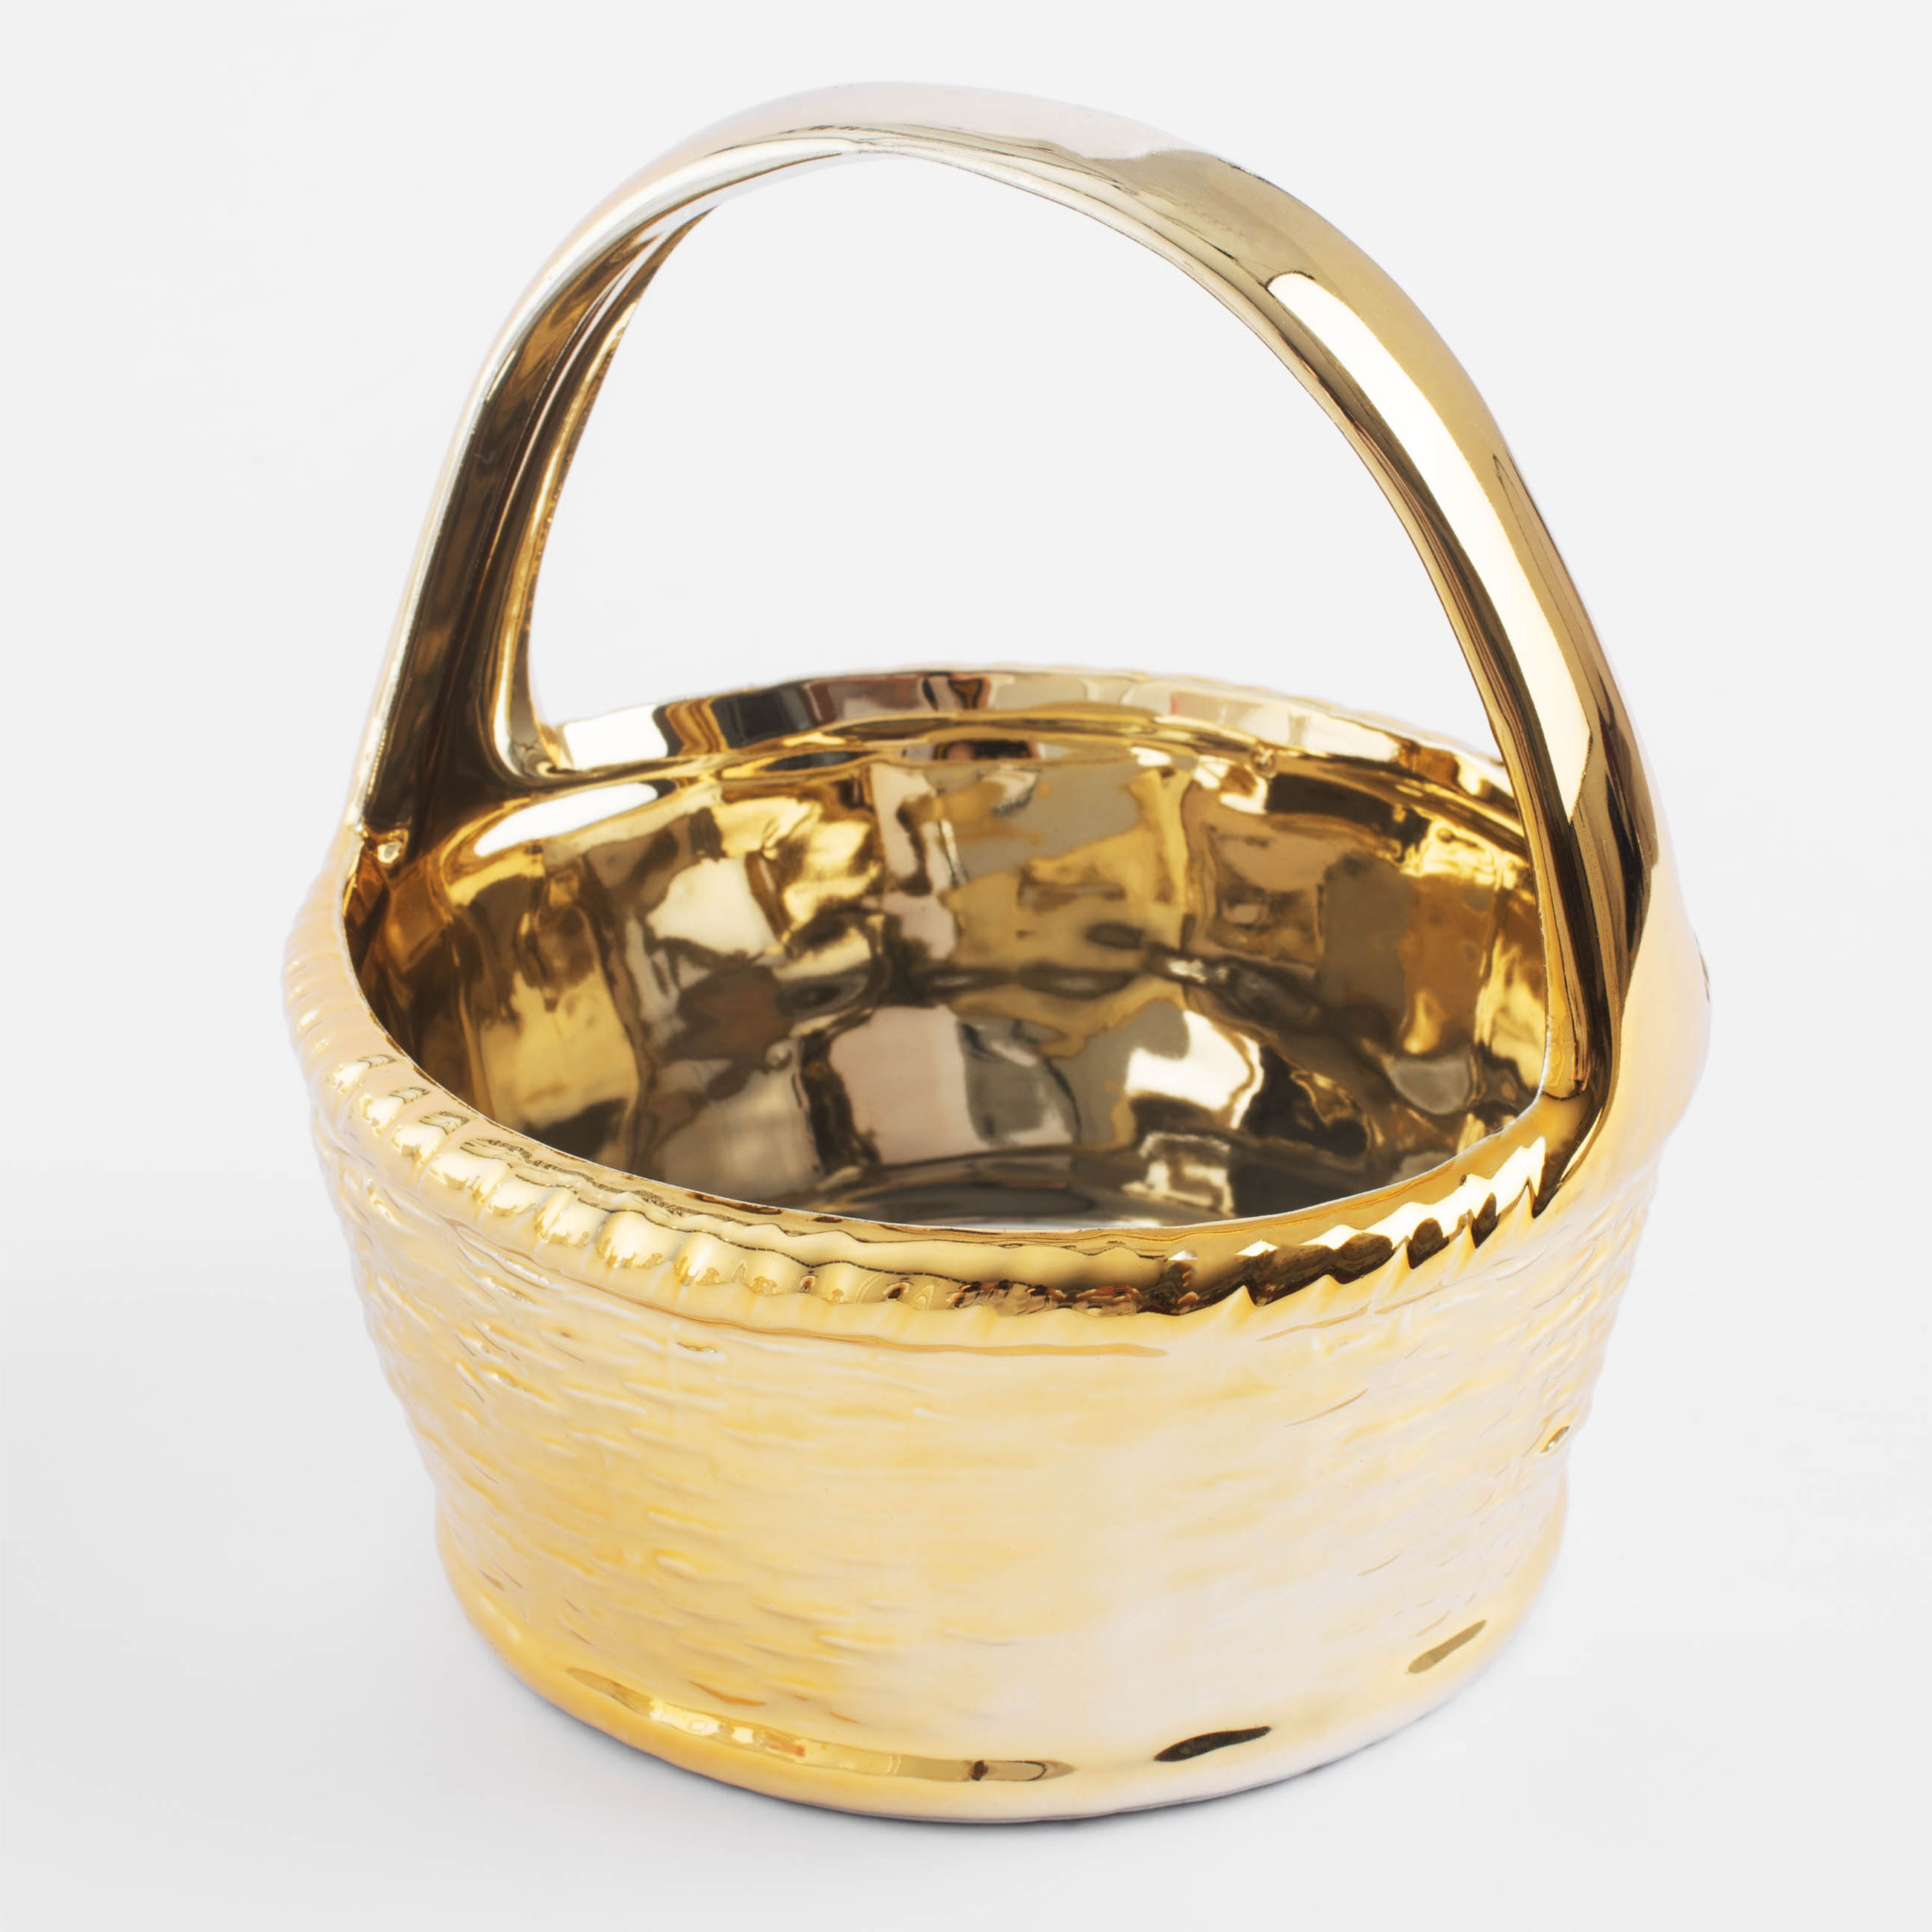 Конфетница, 14х16 см, с ручкой, керамика, золотистая, Корзина, Easter gold изображение № 2